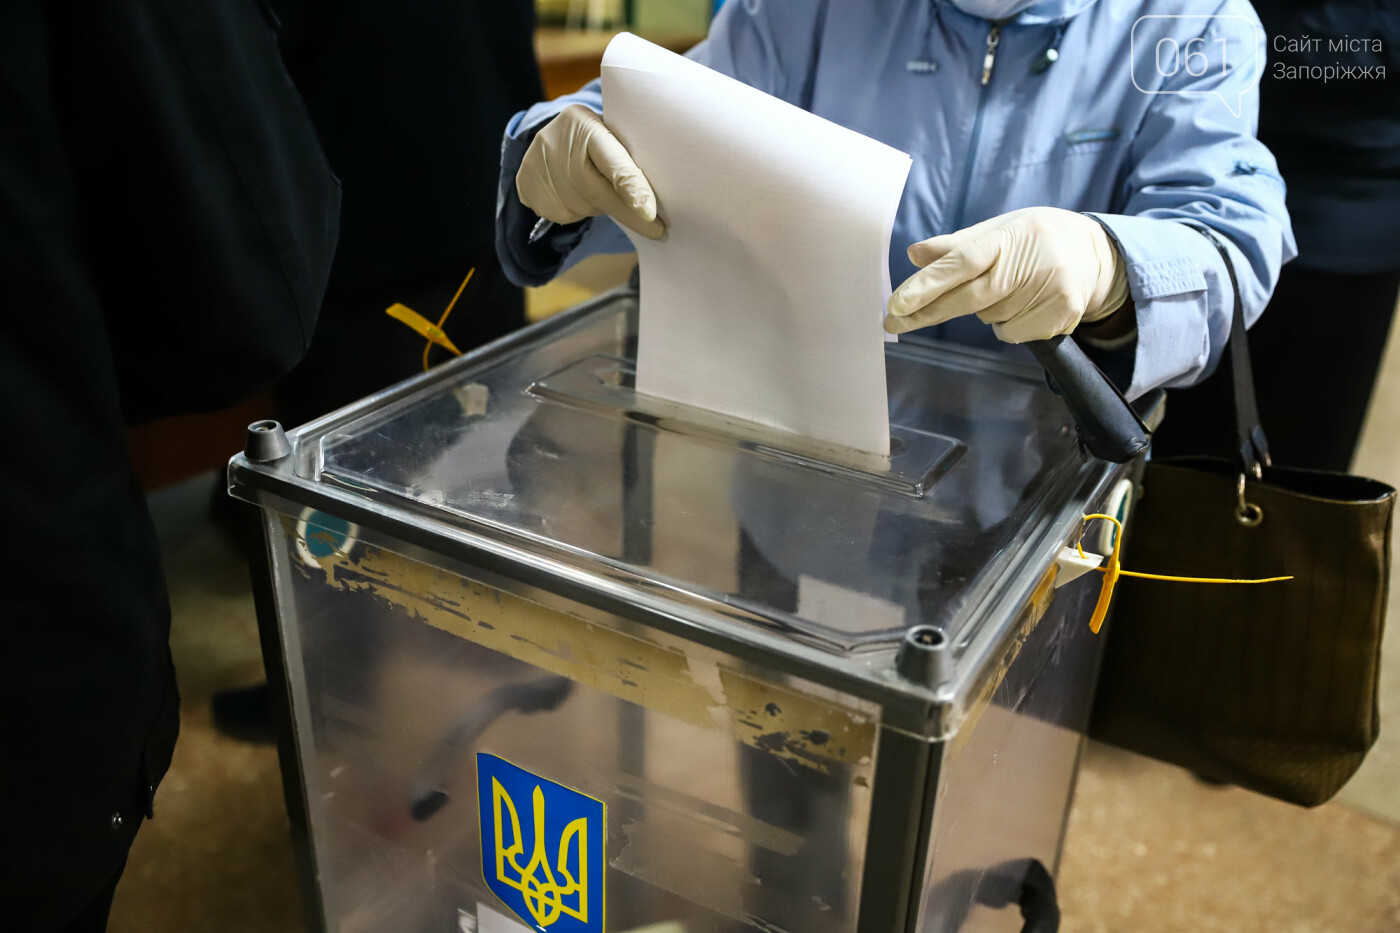 Выборы в условиях карантина: как запорожцы выбирают мэра и депутатов, - ФОТОРЕПОРТАЖ, фото-46